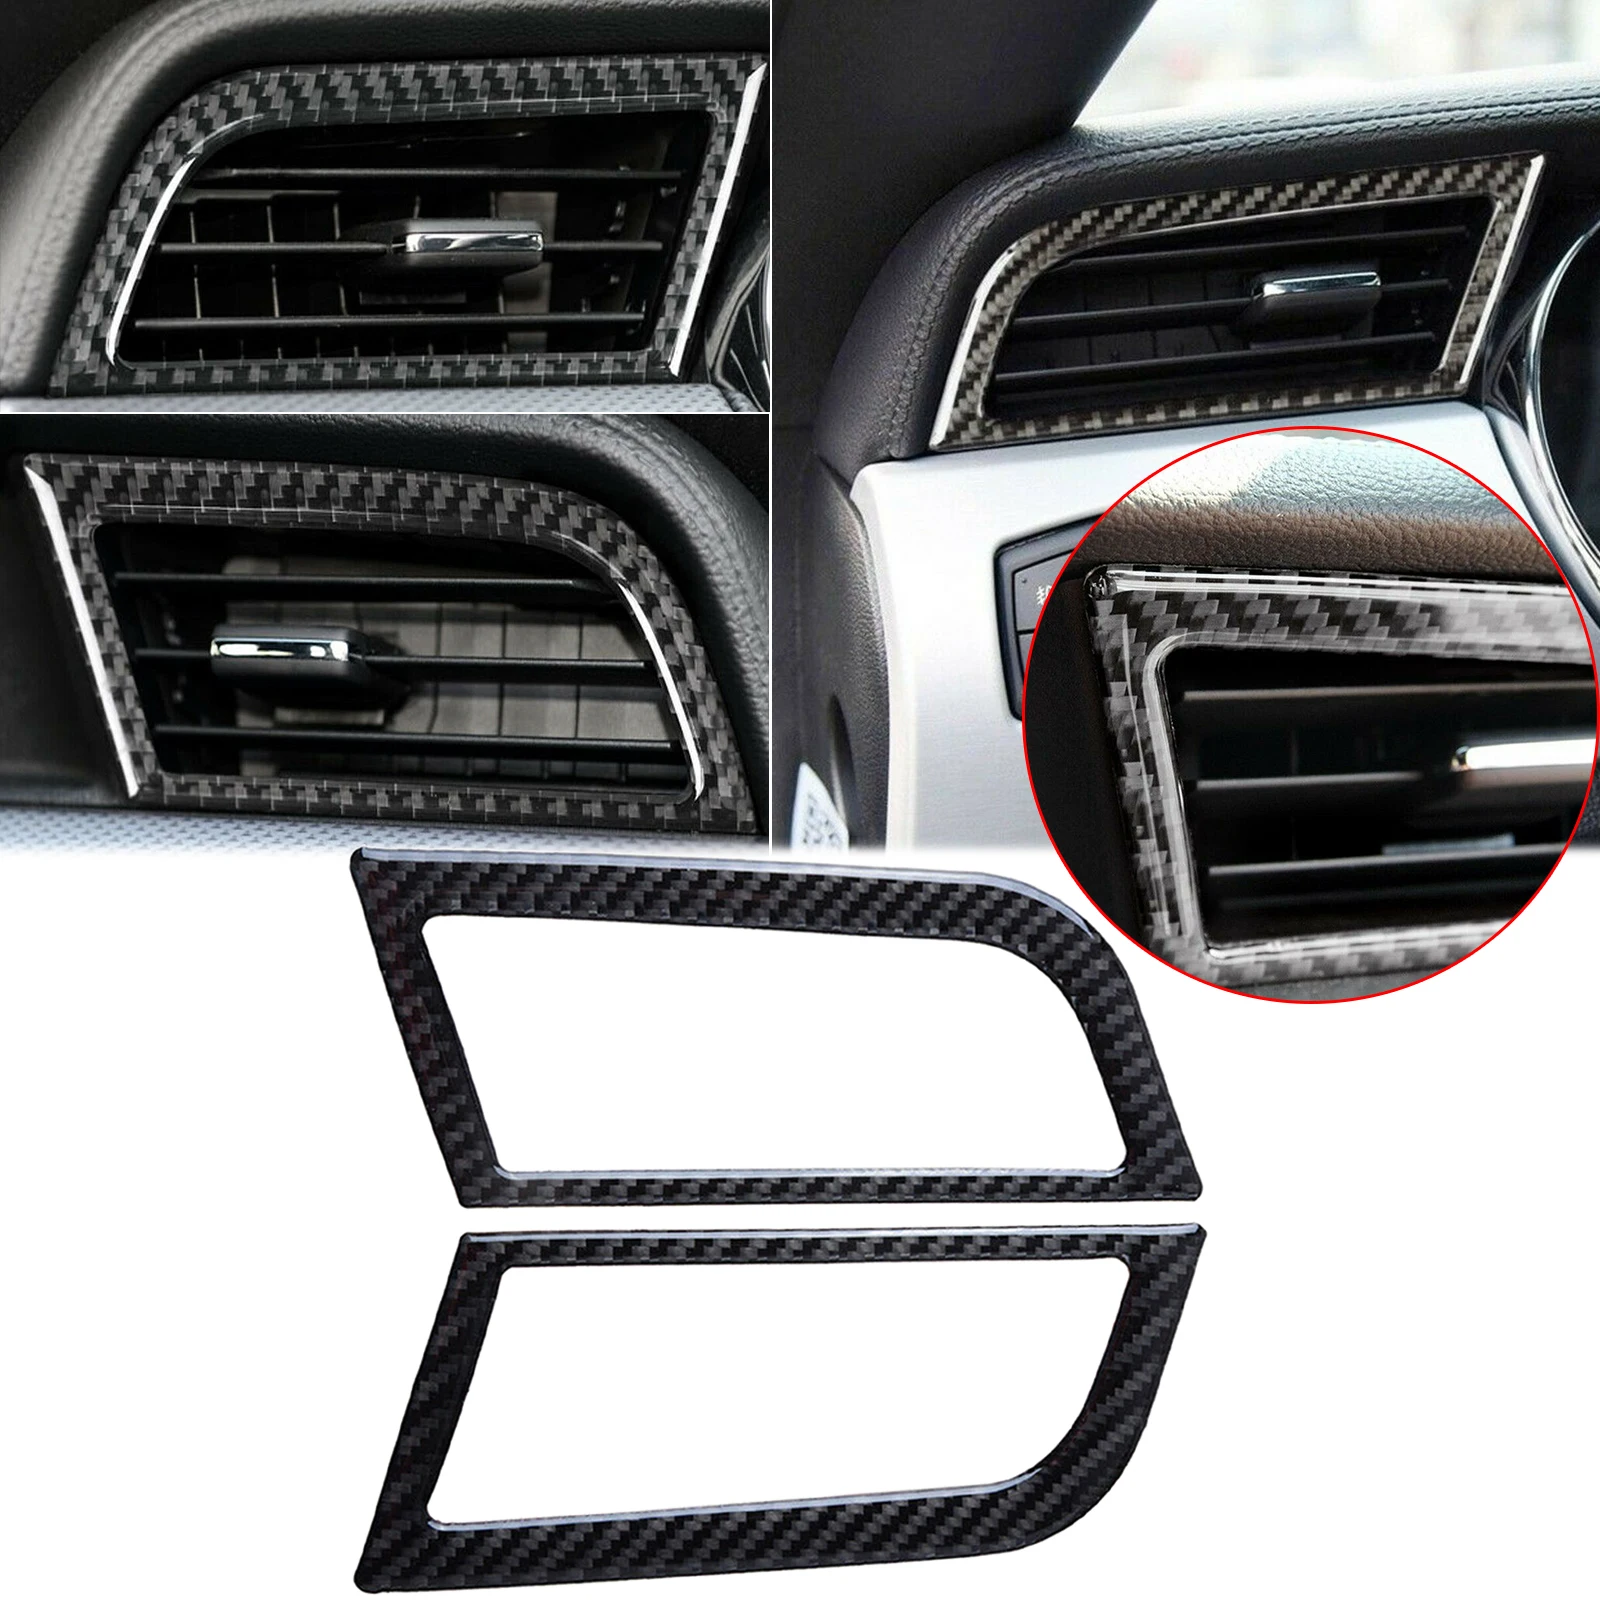 Cubierta de fibra de carbono para salpicadero Interior de Ford Mustang, embellecedor de cubierta de ventilación de aire de CA para consola, 2015-2020